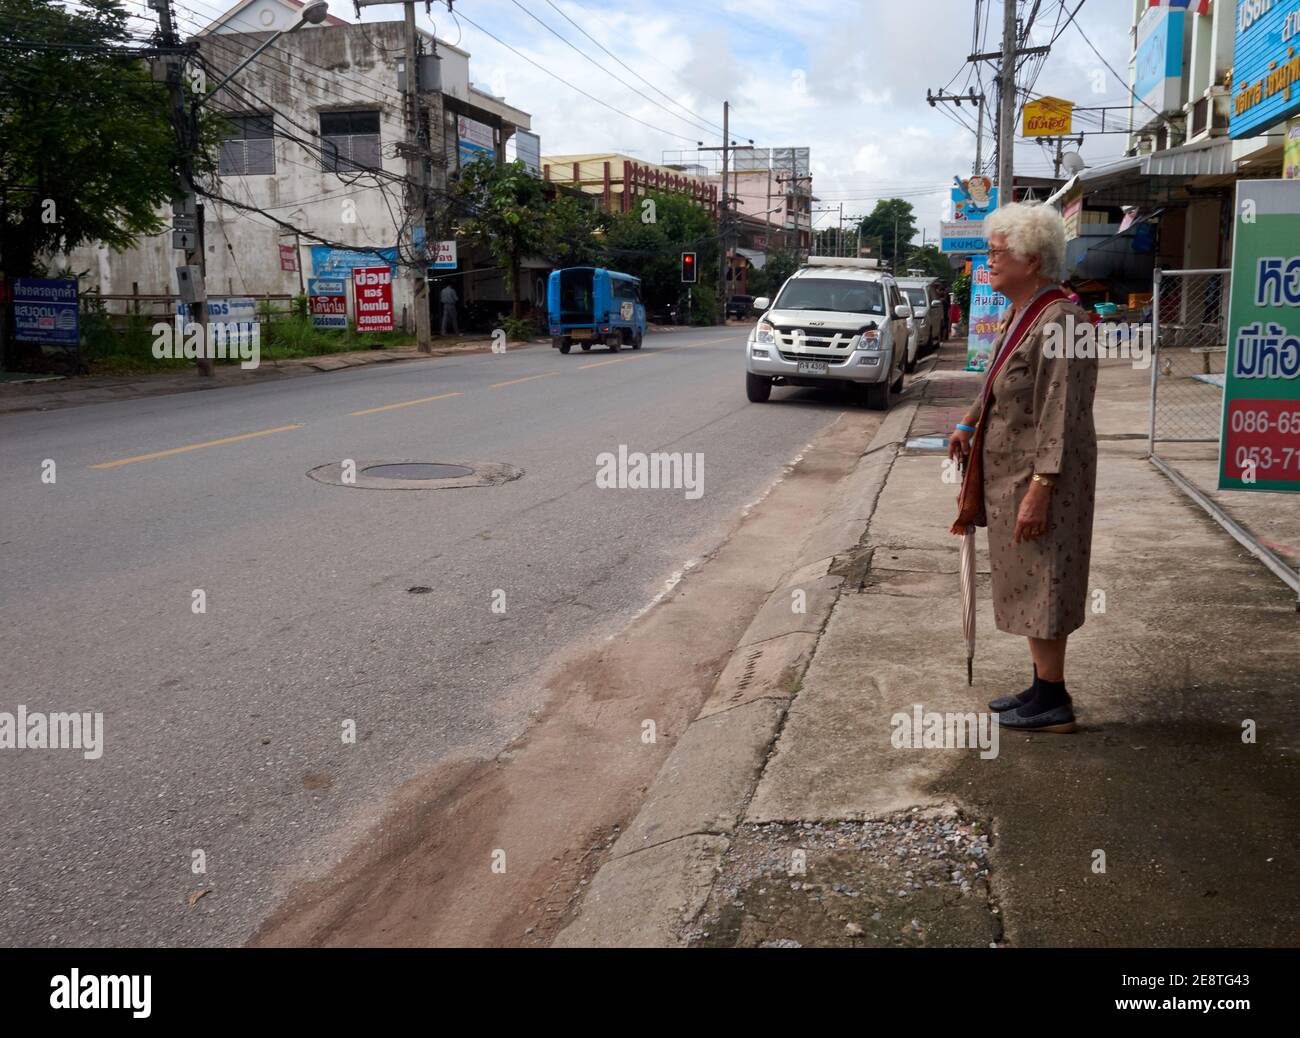 Una donna anziana si trovava sul lato della strada in attesa del passaggio dei mezzi pubblici Foto Stock